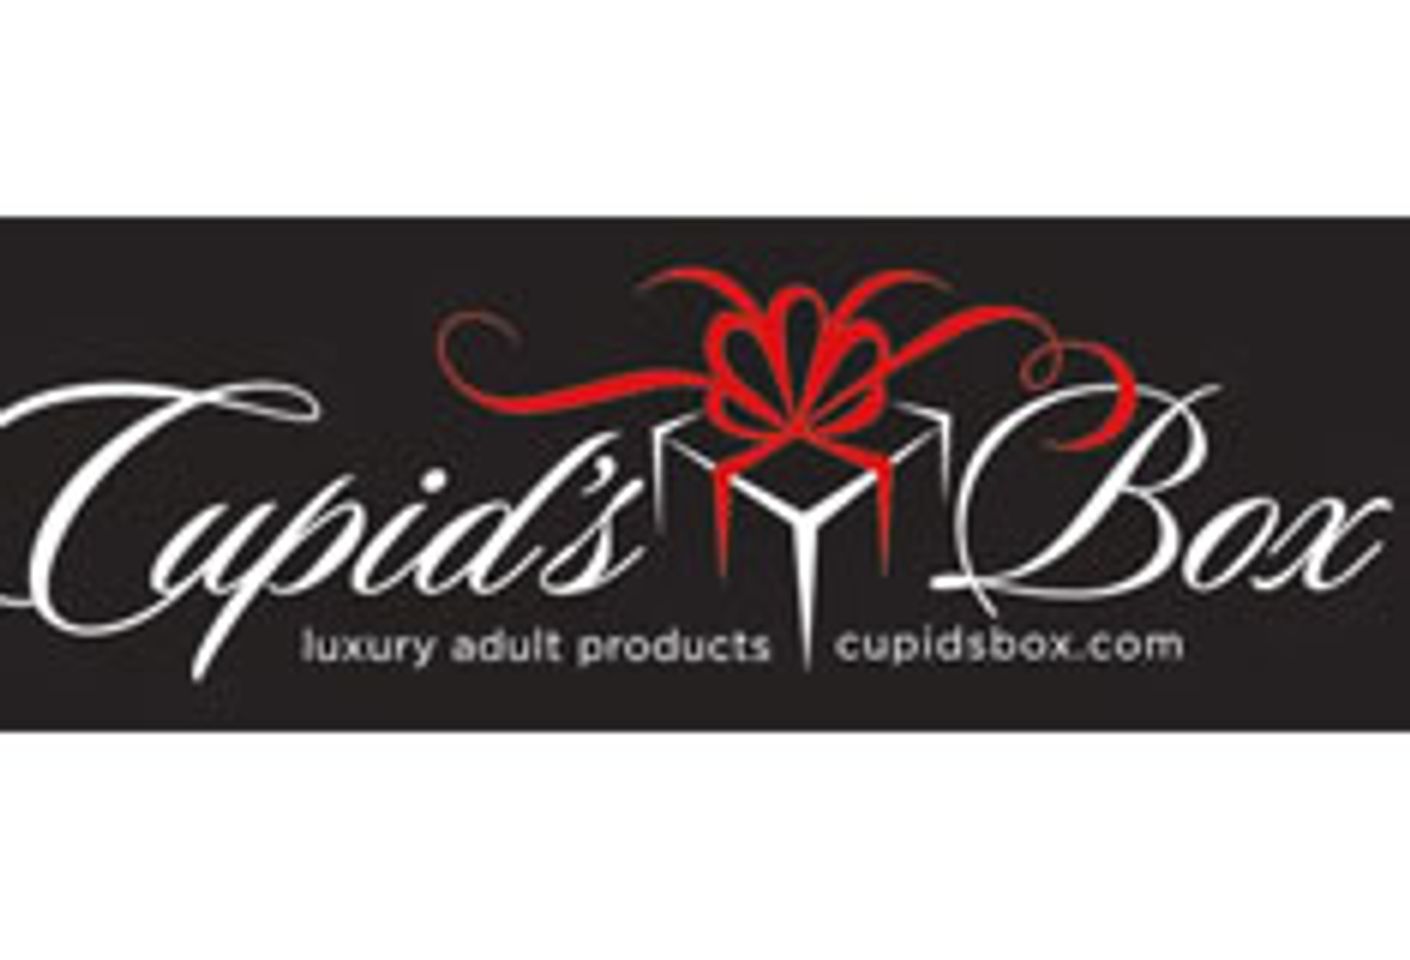 Online Adult Retailer Cupid’s Box Debuts